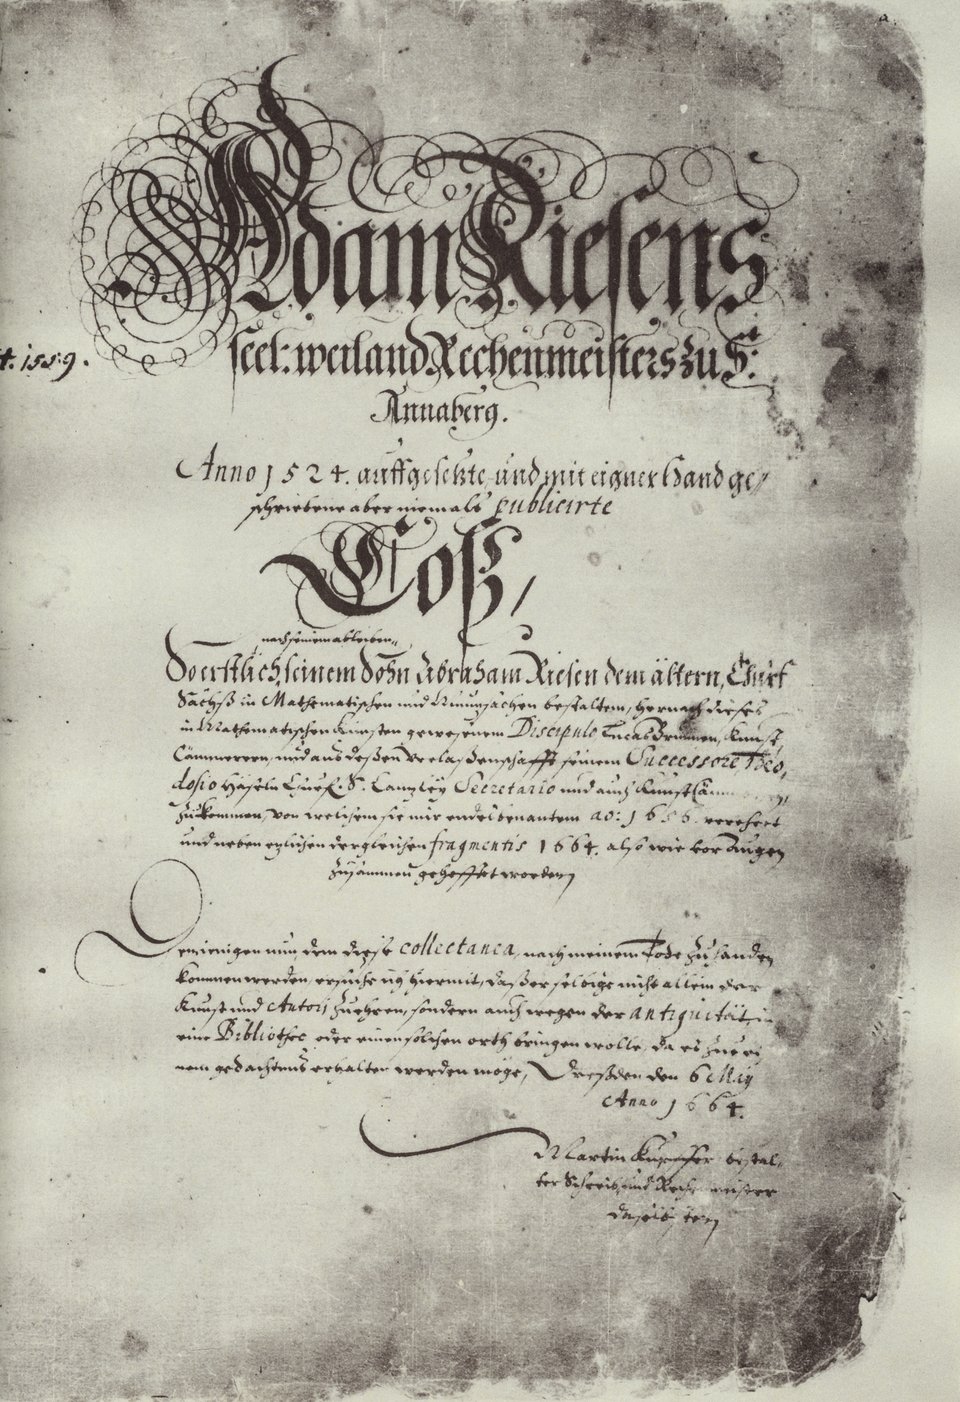 Die Handschrift von Adam Ries, als Coß bezeichnet.